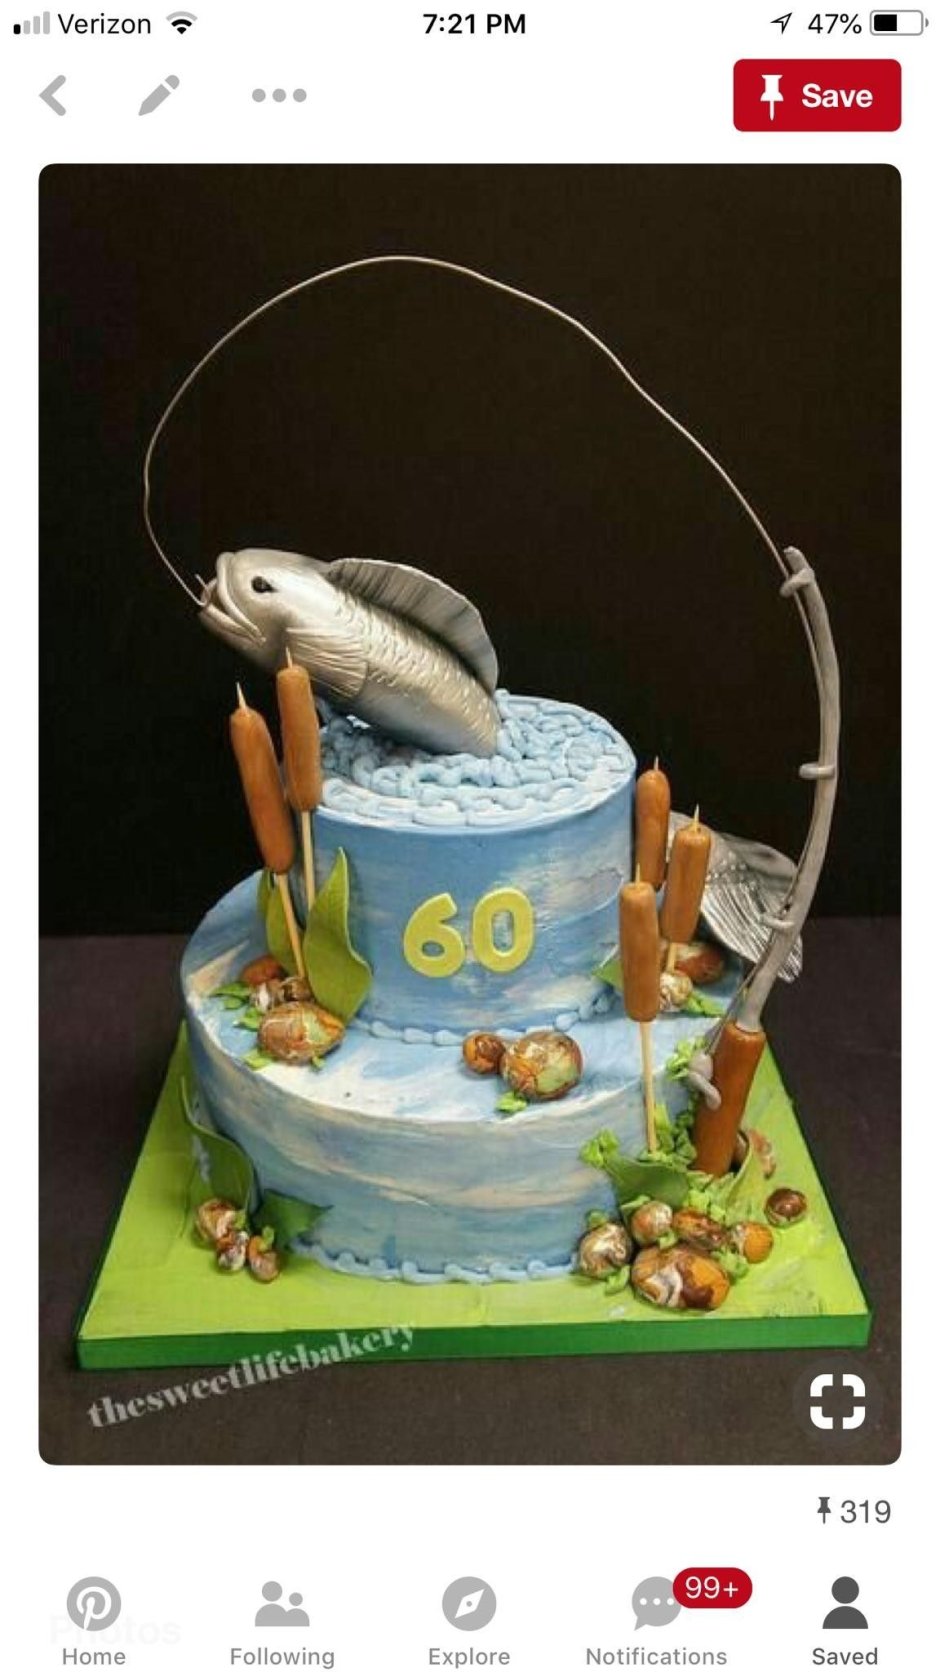 Торт в стиле рыбалки